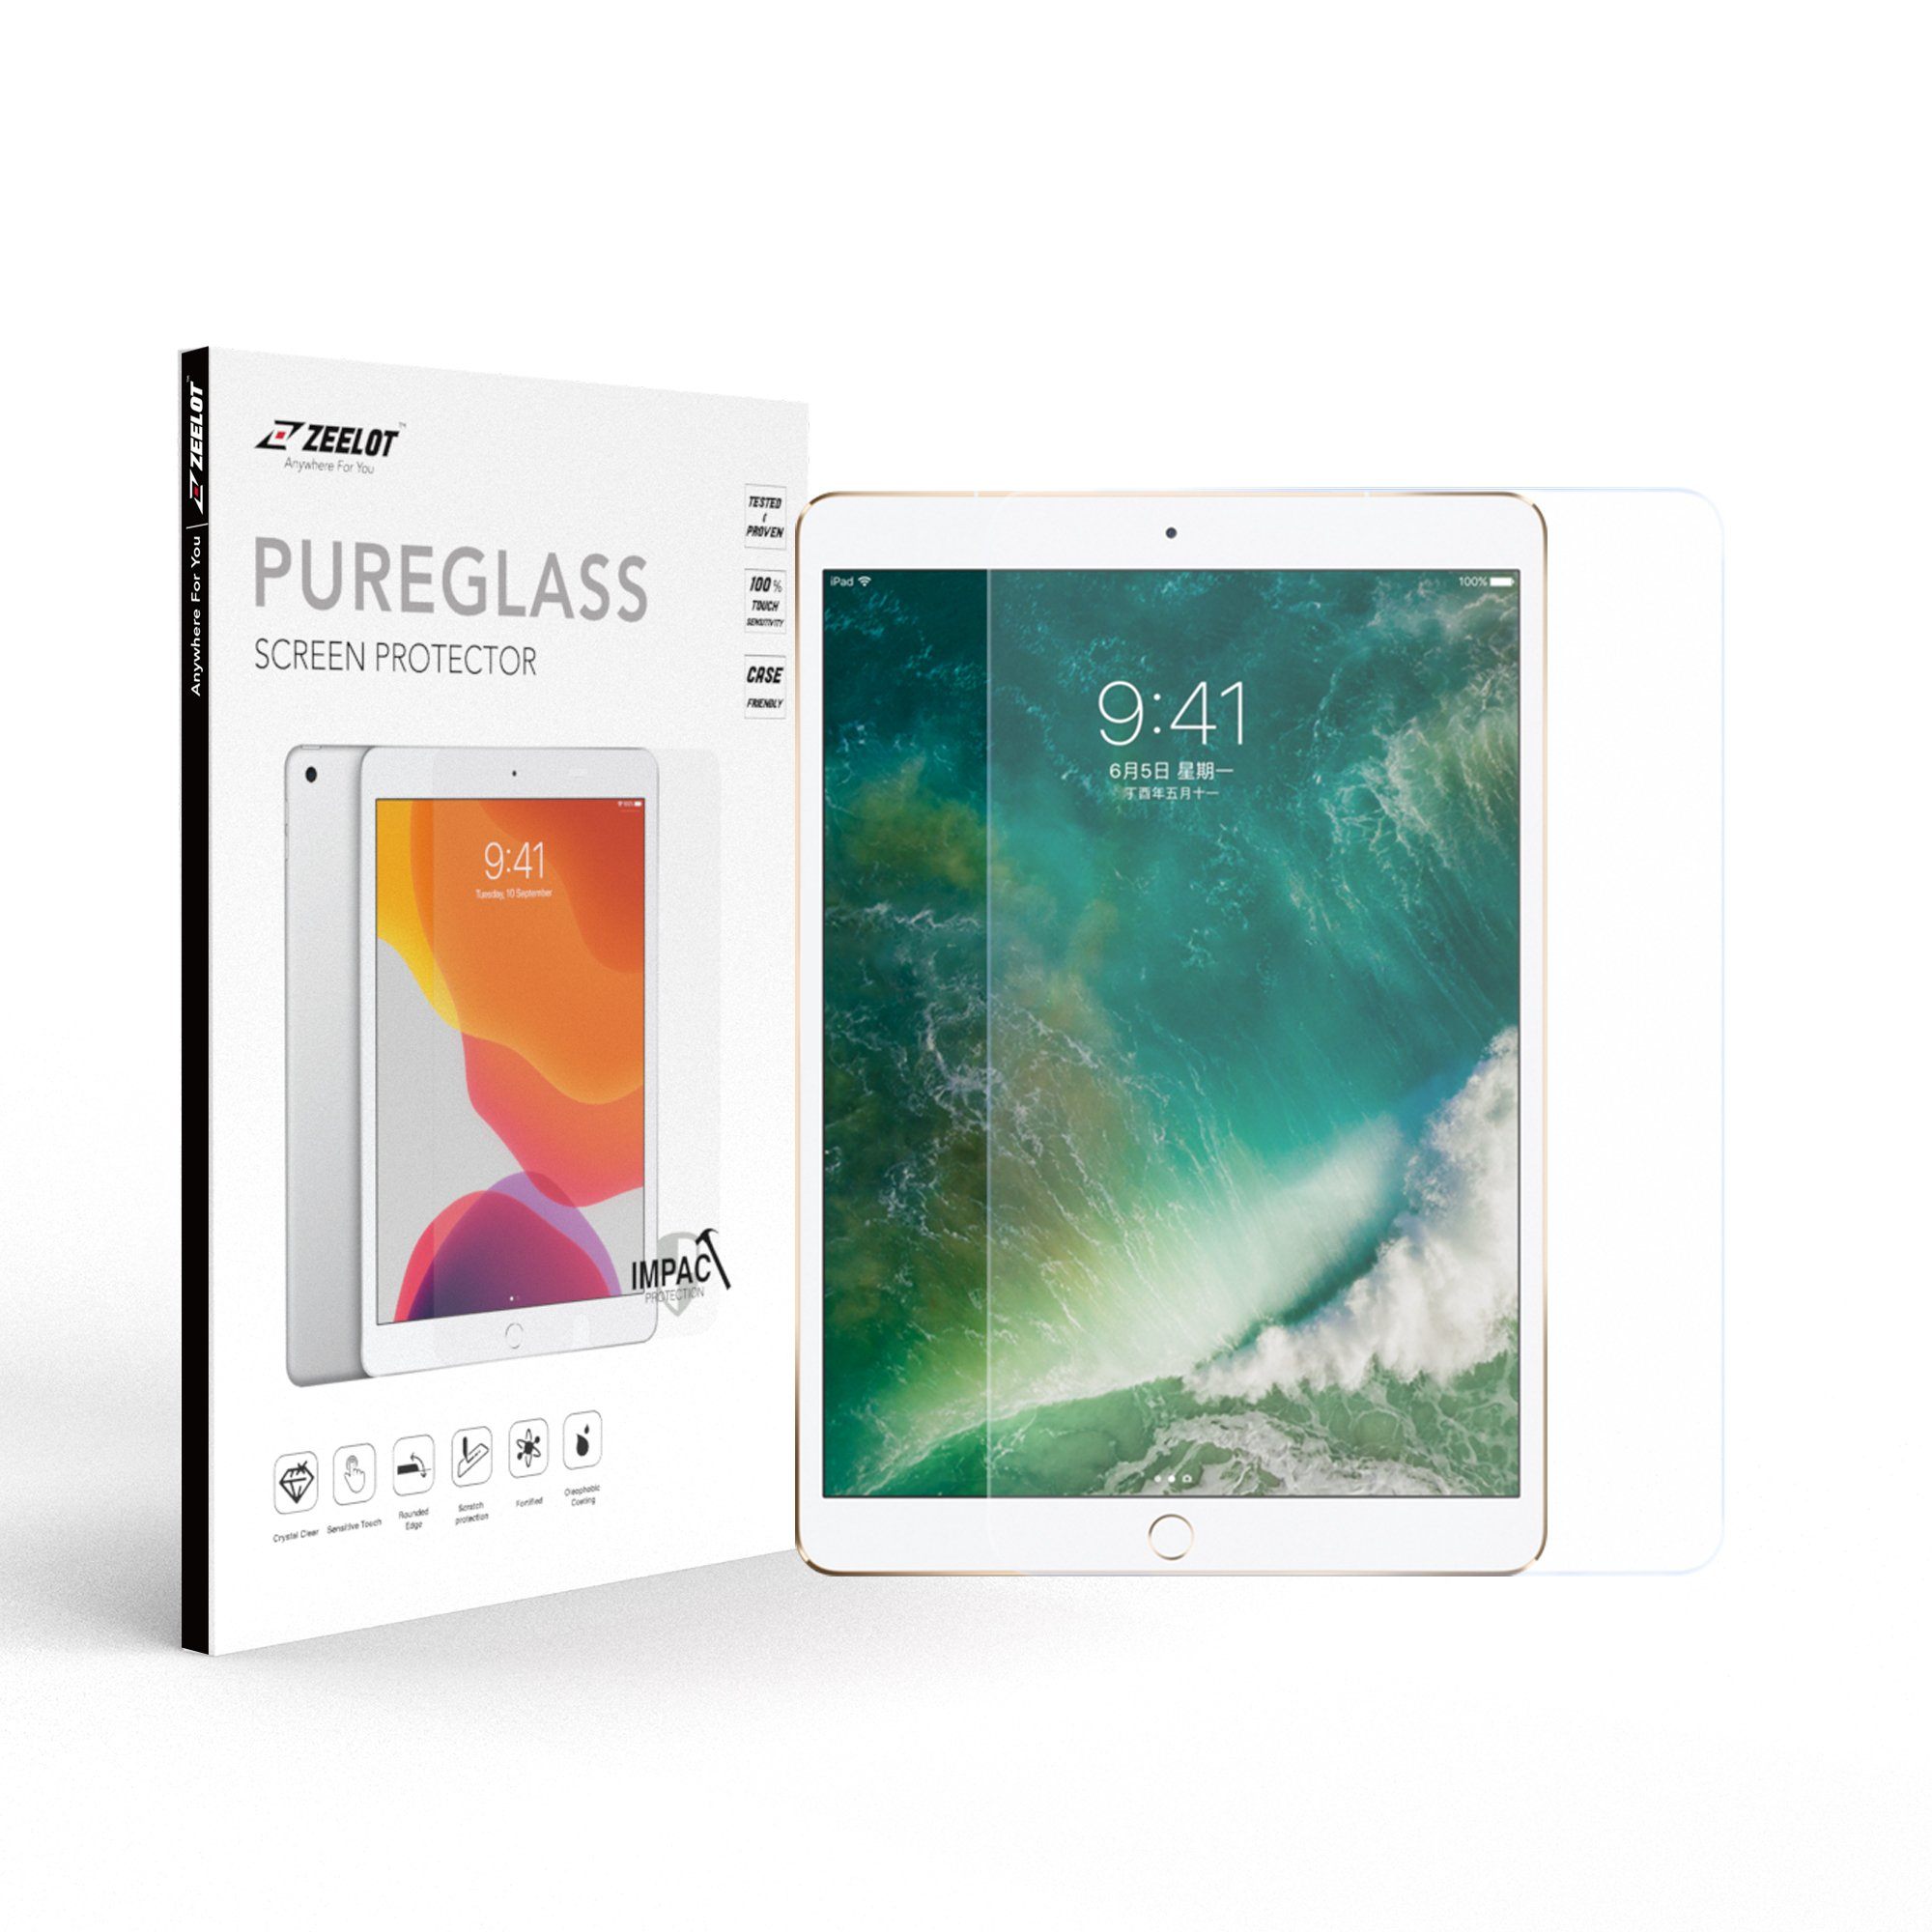 ZEELOT PureGlass 2.5D Tempered Glass Screen Protector for iPad Pro 12.9" (2017/2015), Matte Tempered Glass ZEELOT 